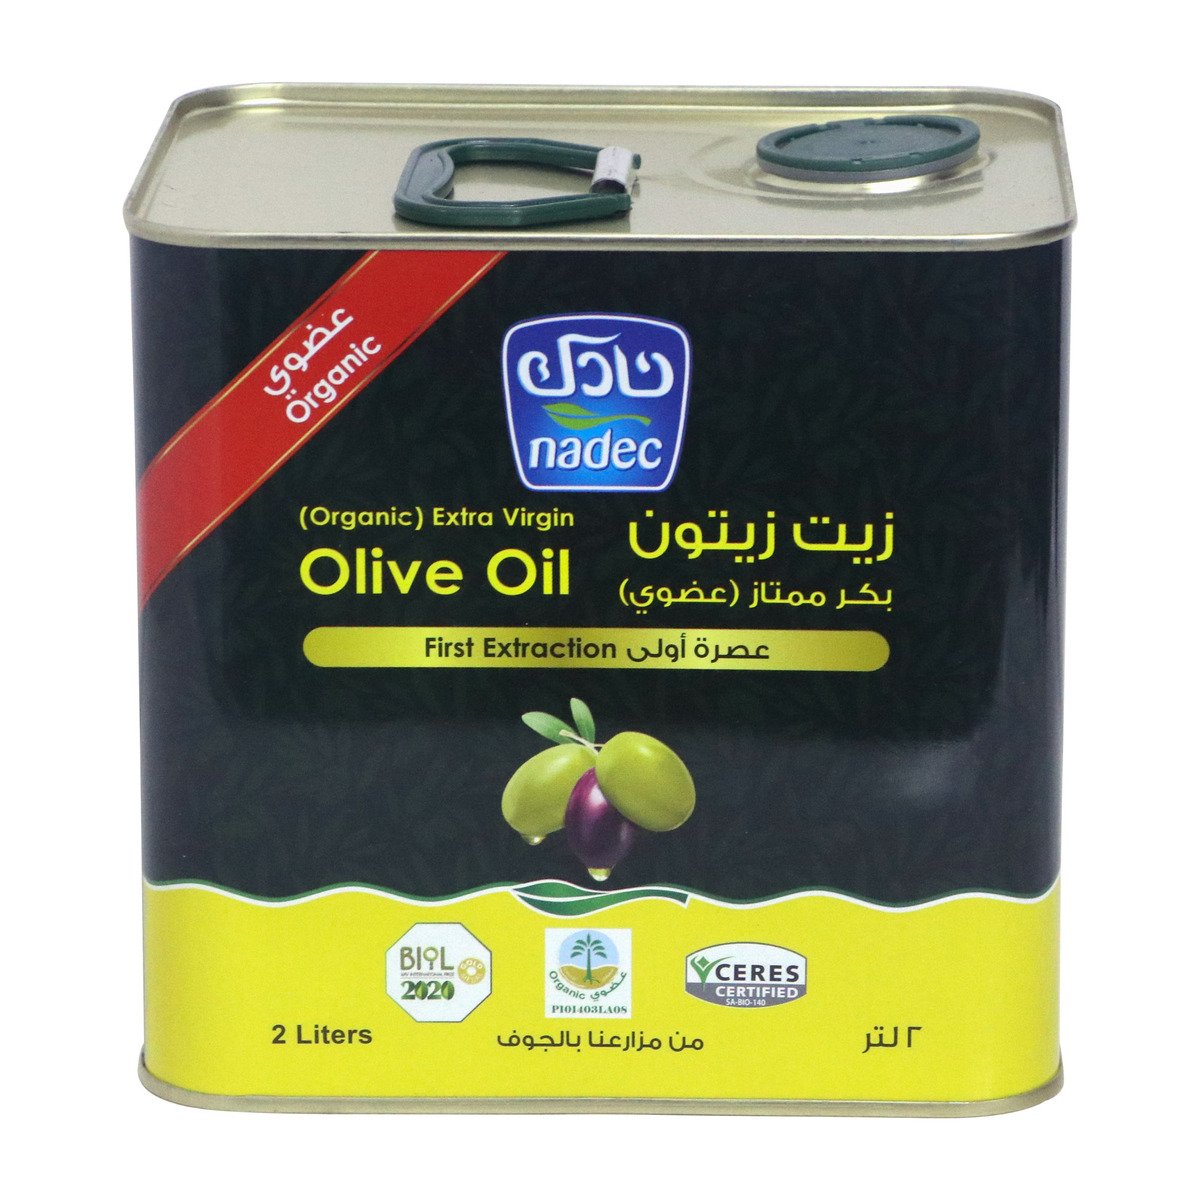 اشتري قم بشراء نادك زيت زيتون بكر ممتاز عضوي 2 لتر Online at Best Price من الموقع - من لولو هايبر ماركت Olive Oil في السعودية